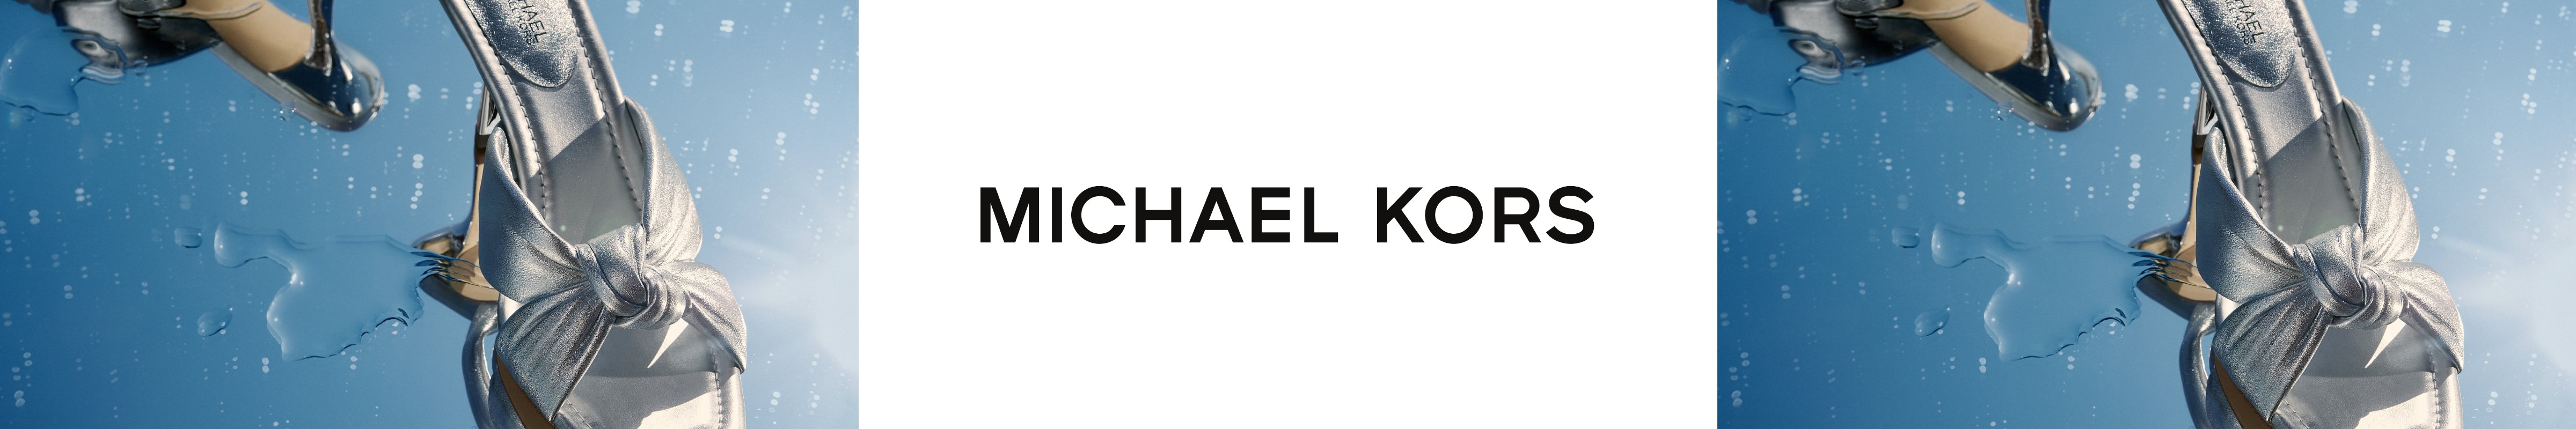 michael-kors-banner